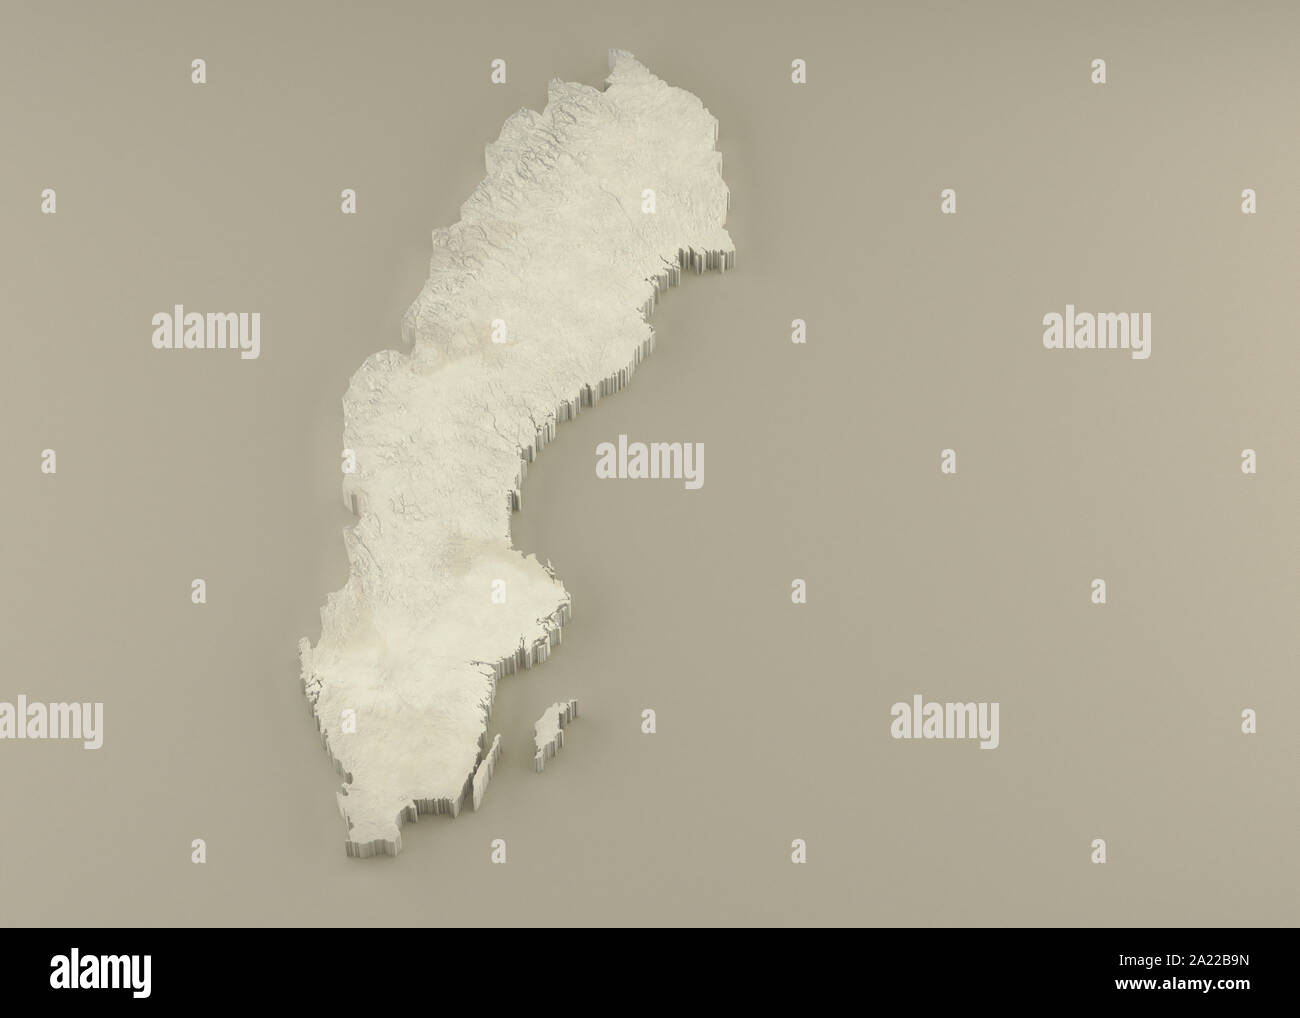 Estruso 3D carta politica della Svezia in rilievo come la scultura in marmo di una luce sfondo beige Foto Stock